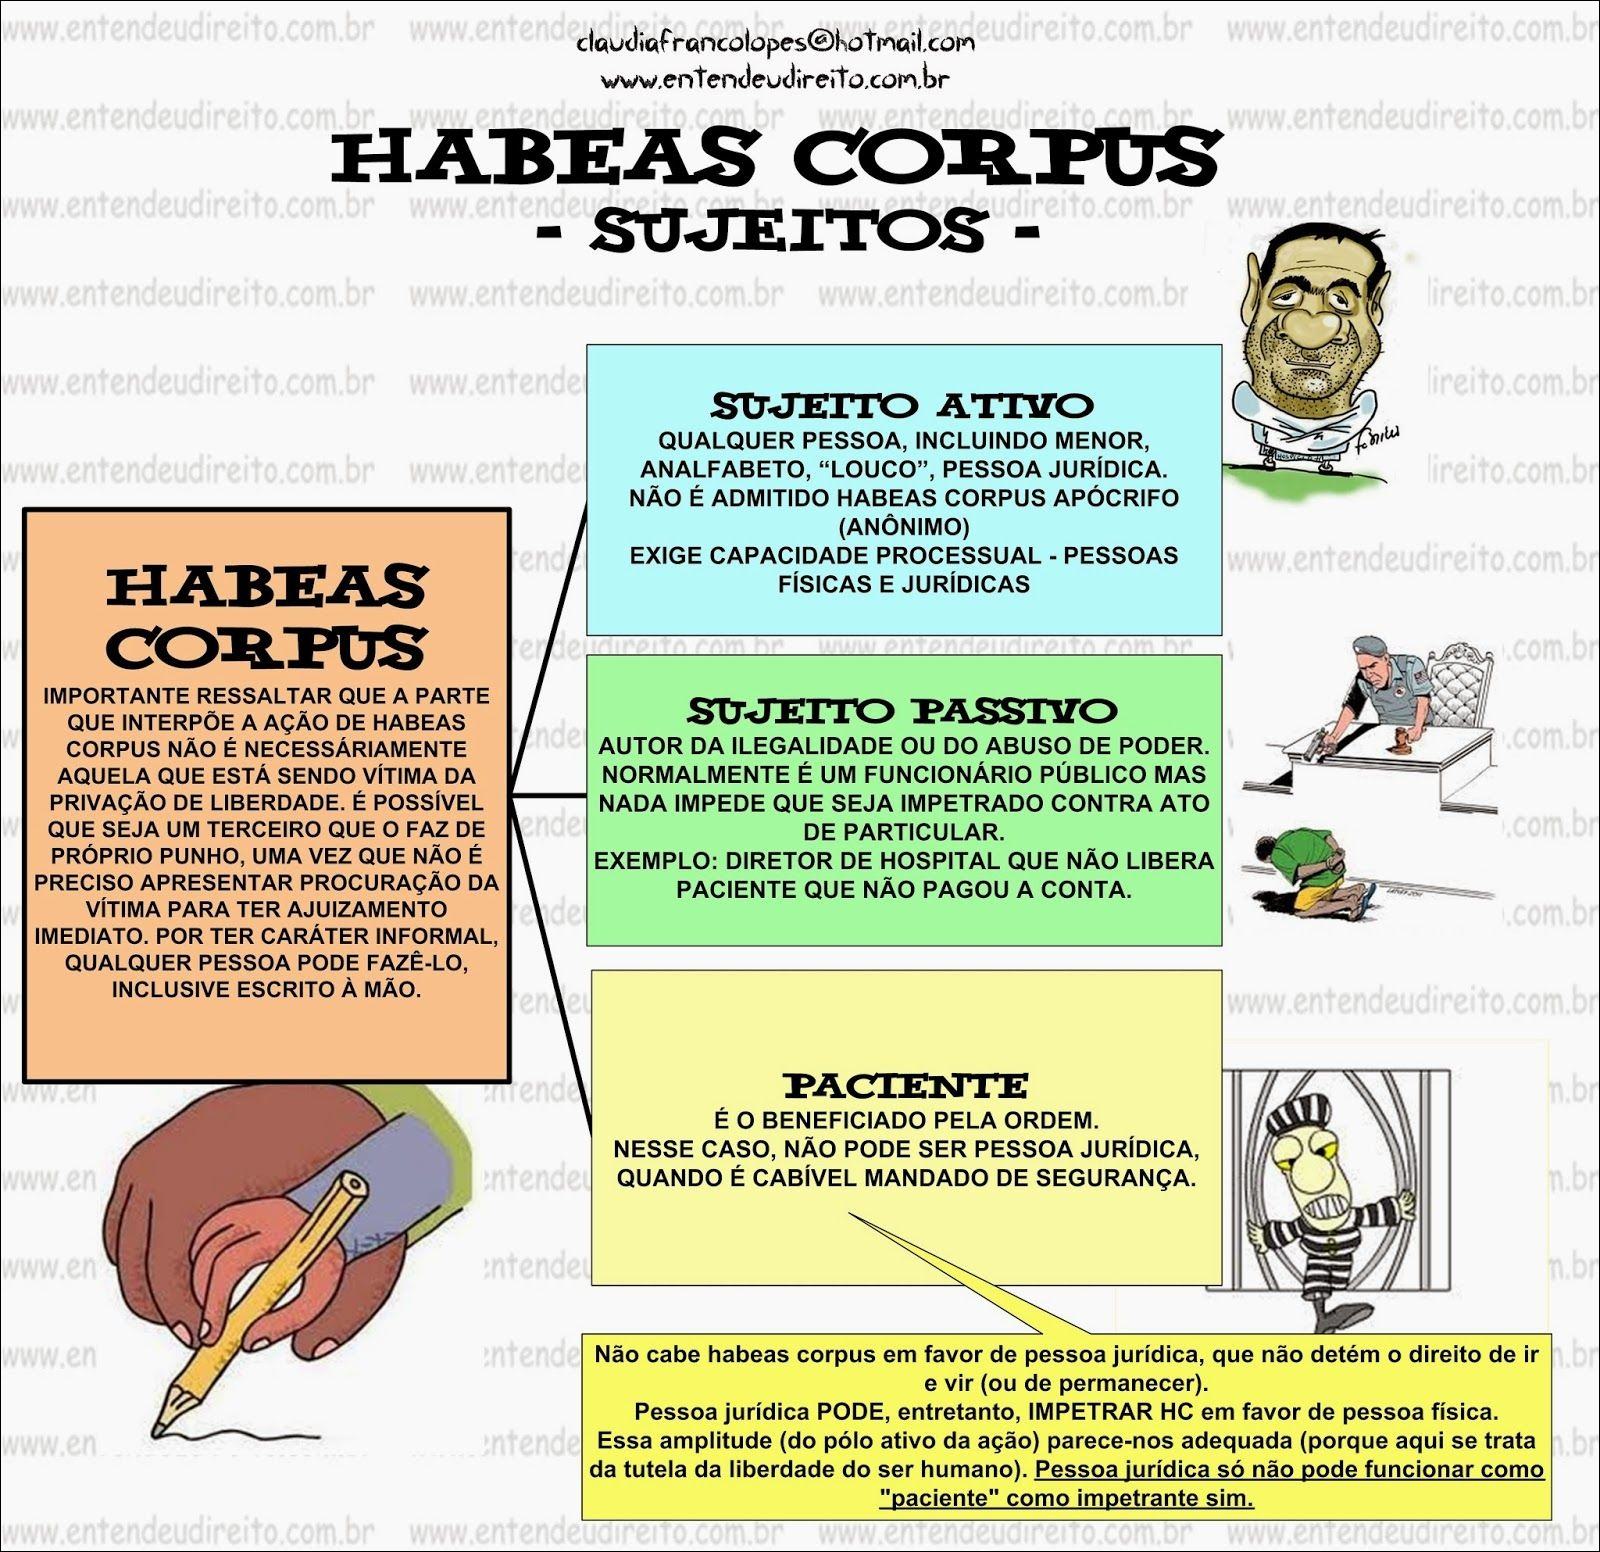 Mapa mental com HABEAS CORPUS no centro, ramificando-se para SUJEITOS e SUJETO ATIVO